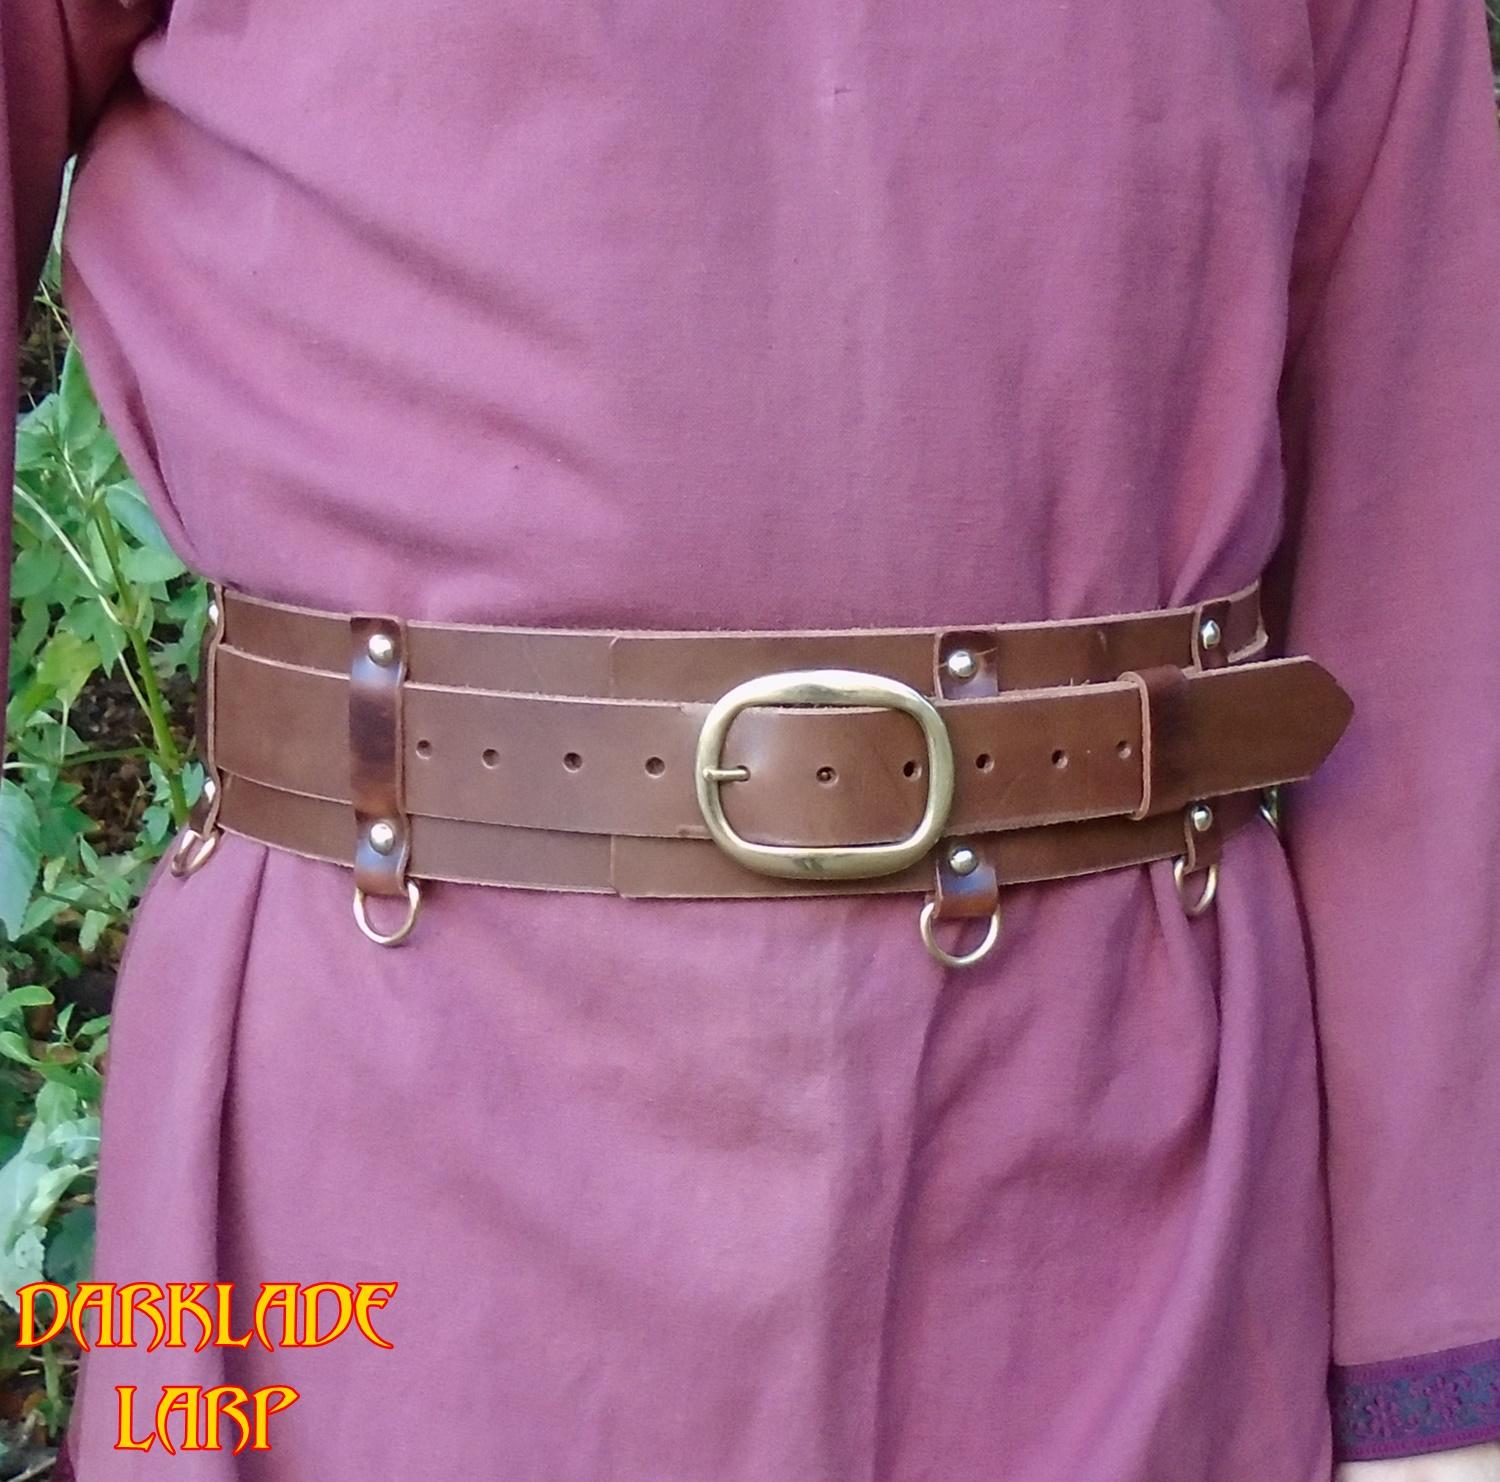 3" wide belt with an inner belt fastening it